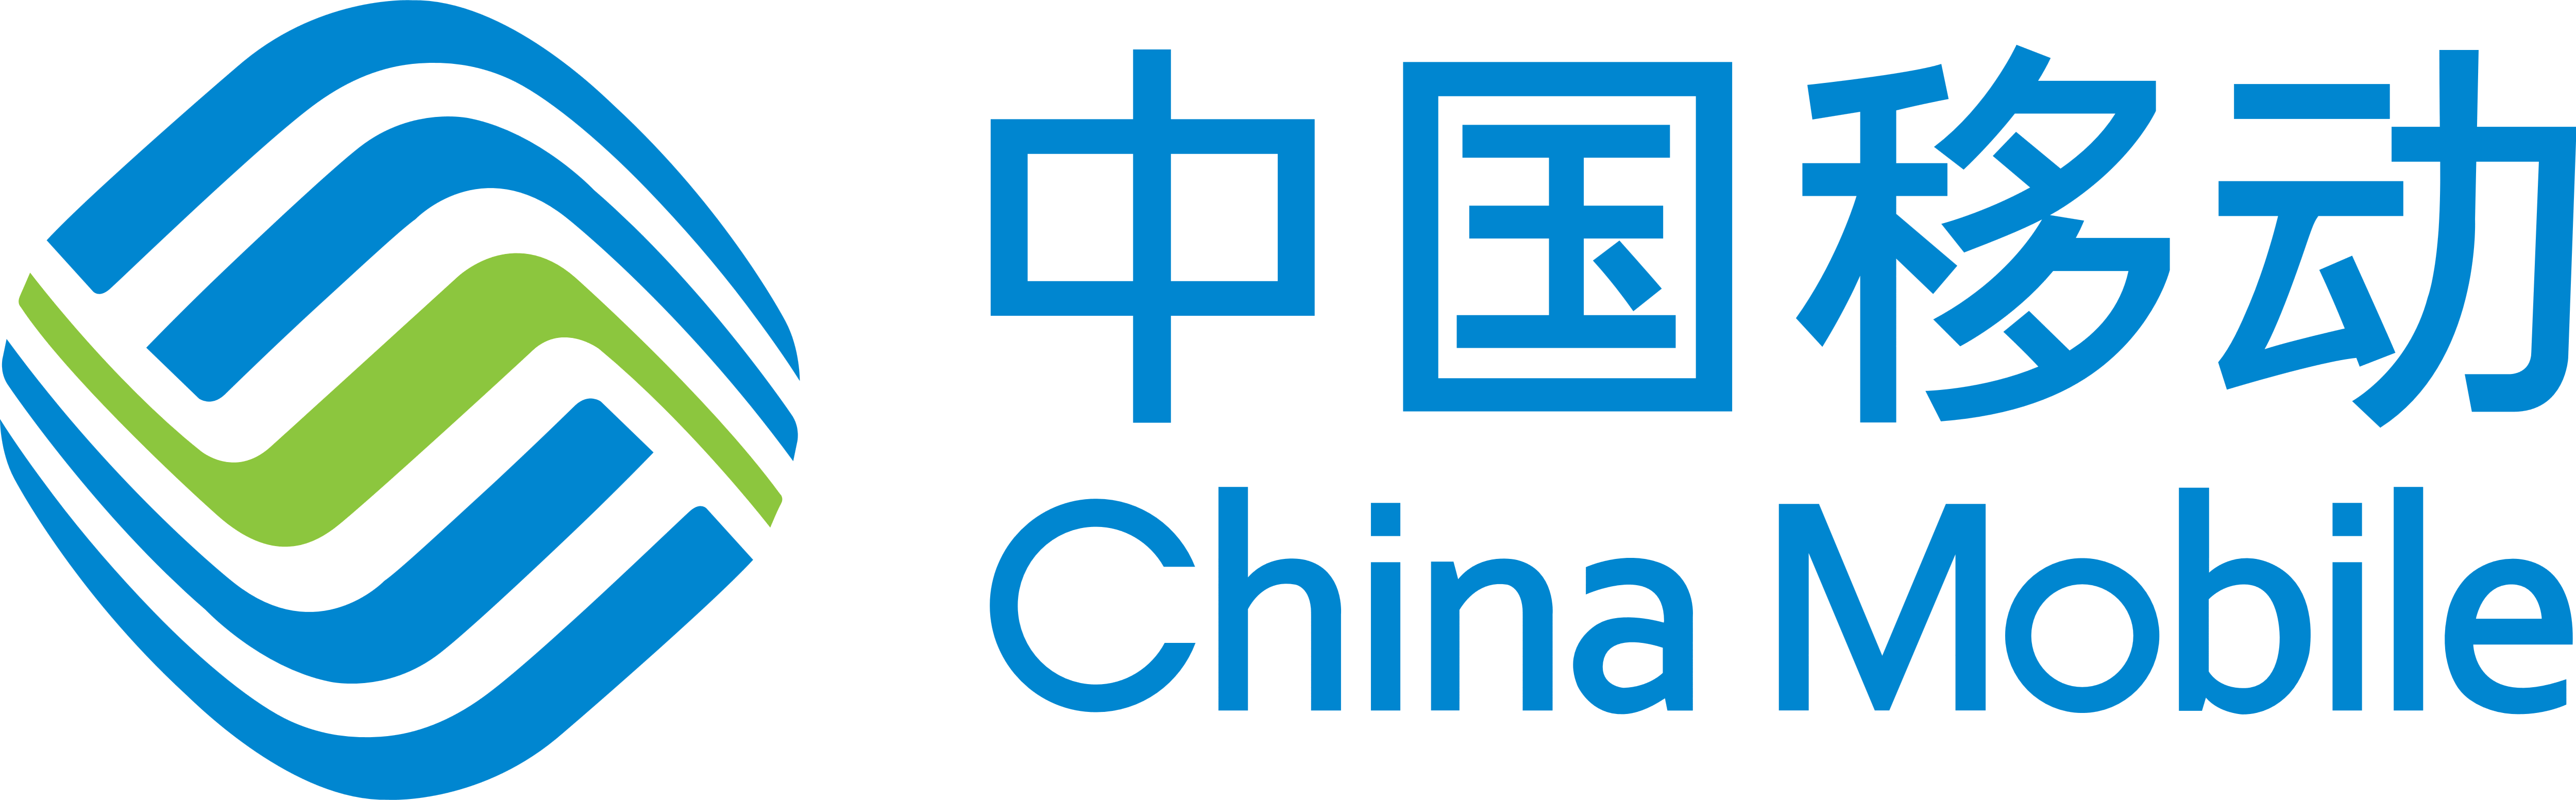 China Mobile Logo - China Mobile – Logos Download